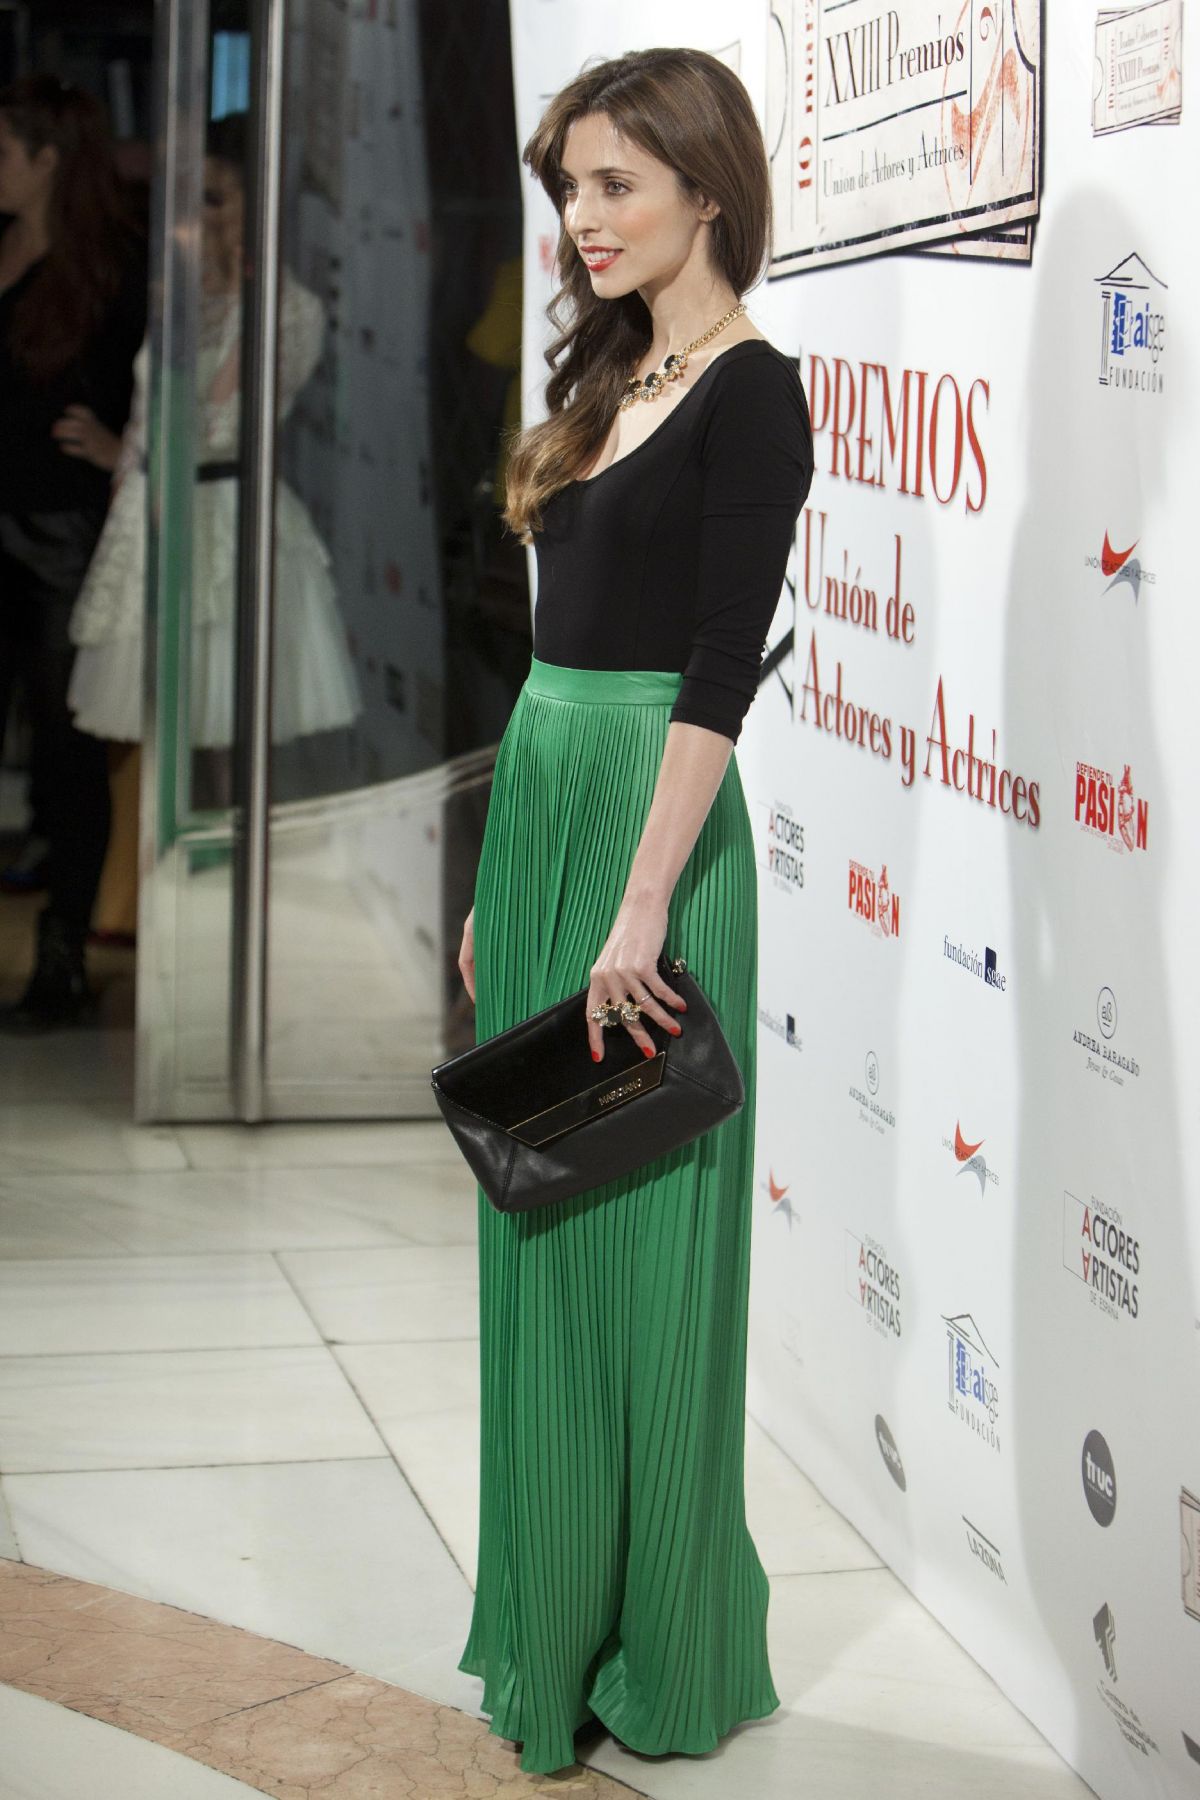 LETICIA DOLERA at Union de Actores Awards 2014 in Madrid – HawtCelebs